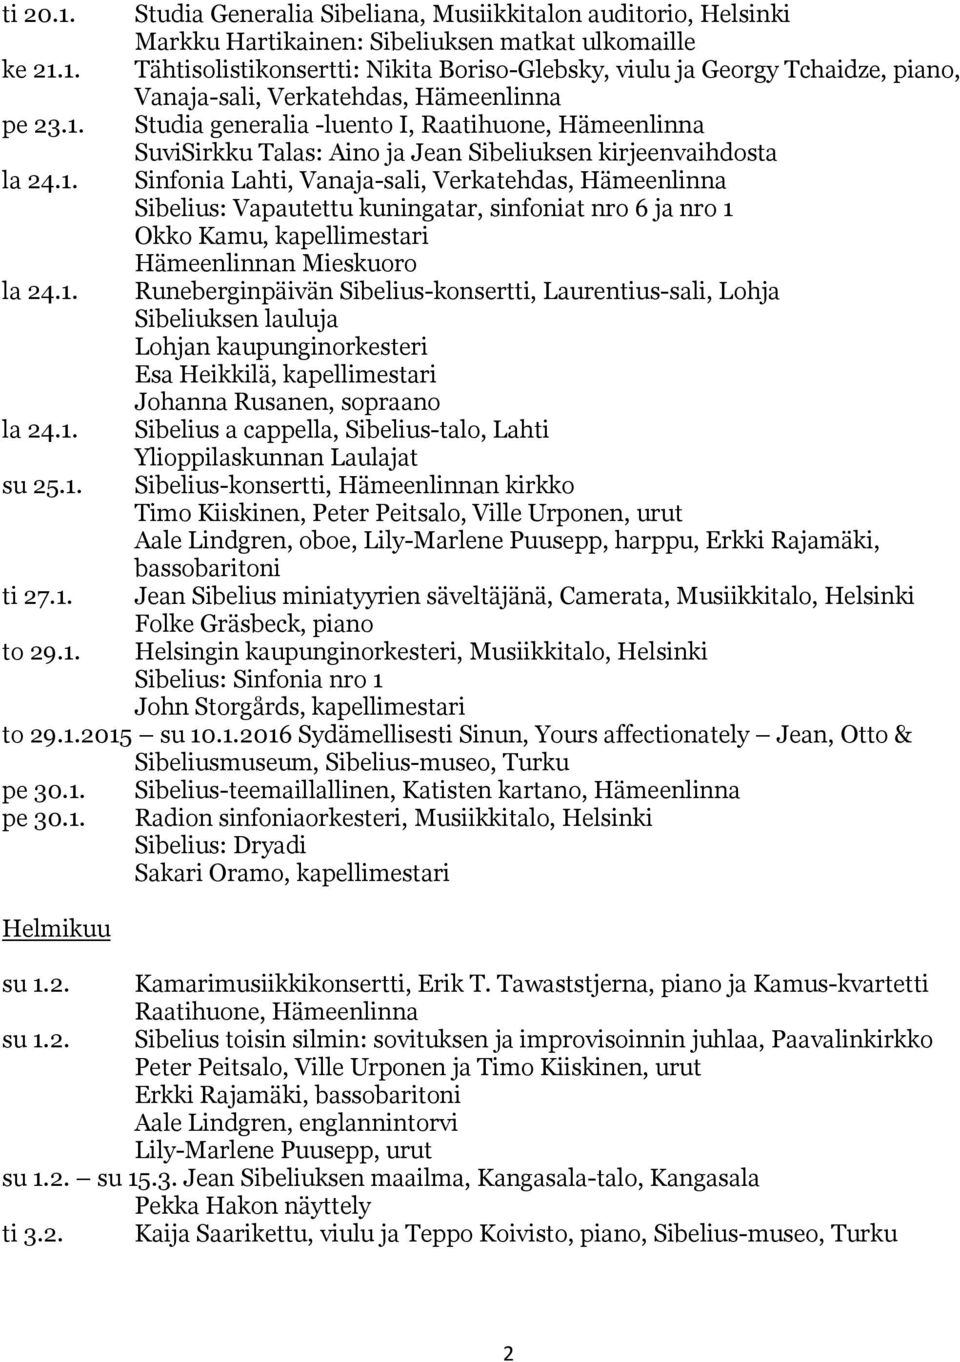 1. Runeberginpäivän Sibelius-konsertti, Laurentius-sali, Lohja Sibeliuksen lauluja Lohjan kaupunginorkesteri Esa Heikkilä, kapellimestari Johanna Rusanen, sopraano la 24.1. Sibelius a cappella, Sibelius-talo, Lahti Ylioppilaskunnan Laulajat su 25.